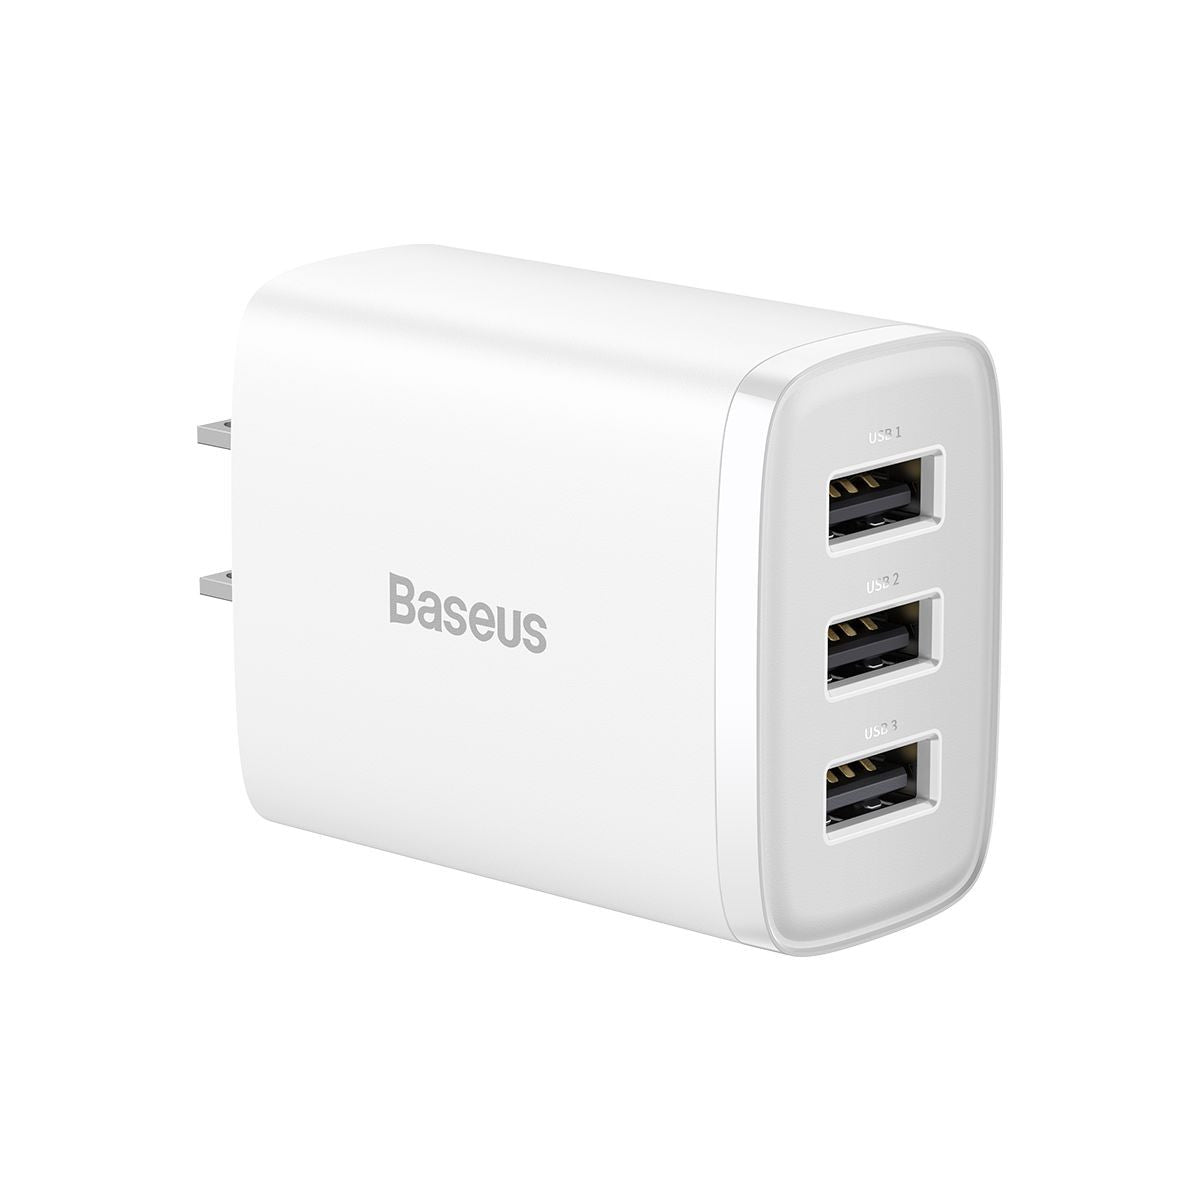 Baseus 17W caricatore USB universale portatile 3 porte adattatore da parete  da viaggio caricatore portatile ricarica